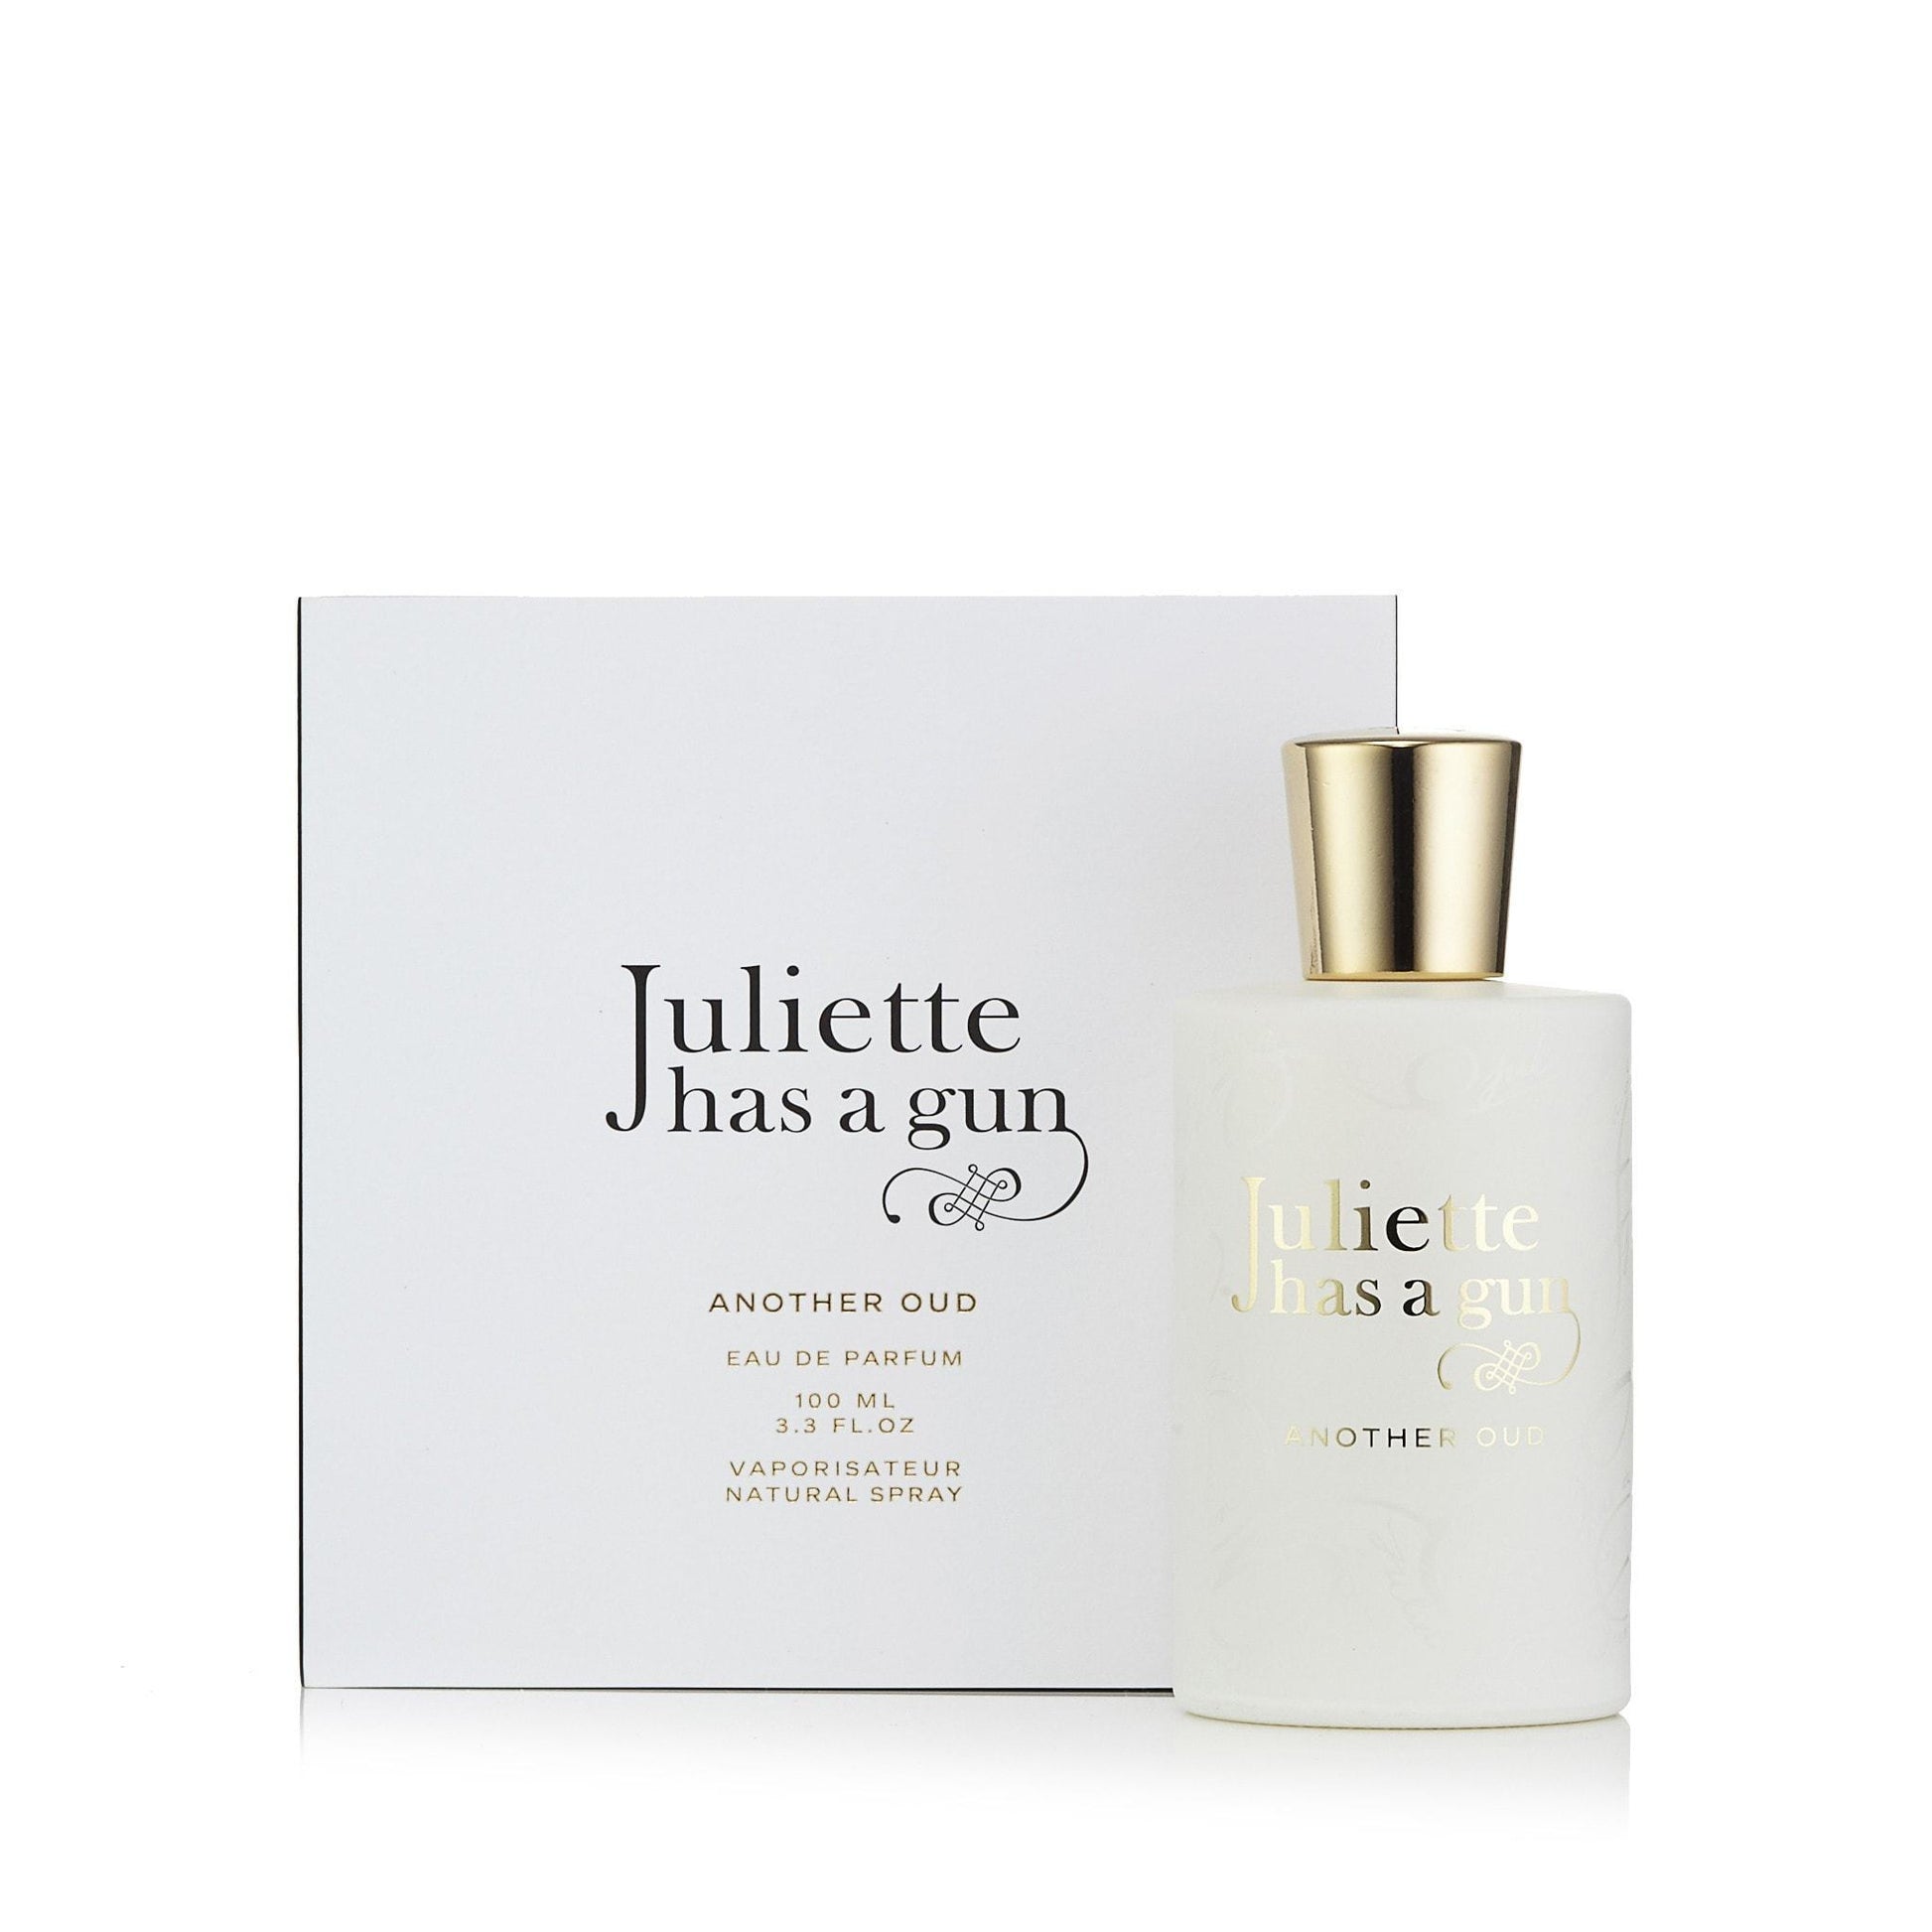 Another Oud Eau de Parfum Spray for Women by Juliette Has a Gun, Product image 1